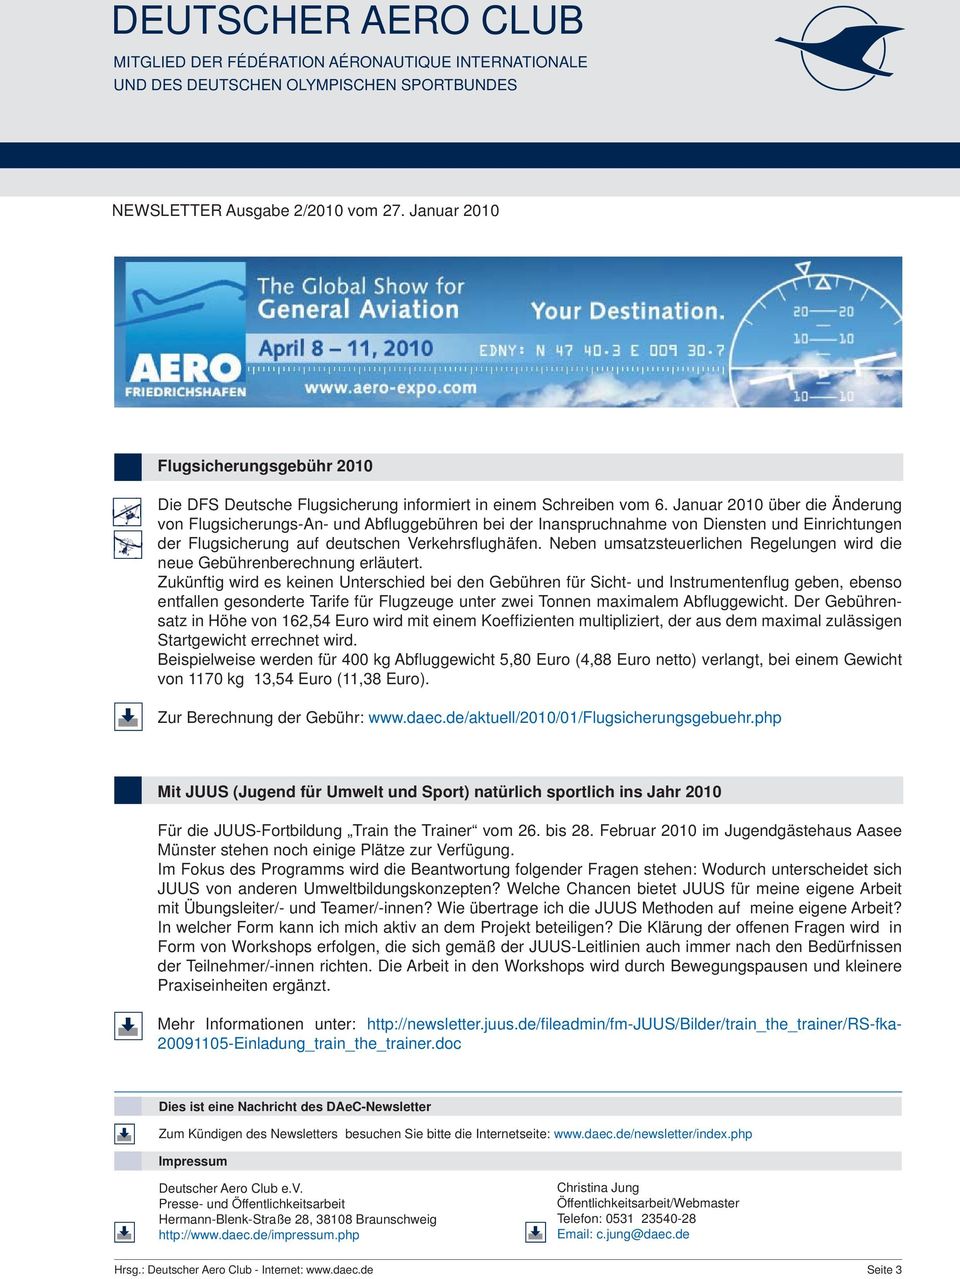 Januar 2010 über die Änderung von Flugsicherungs-An- und Abfl uggebühren bei der Inanspruchnahme von Diensten und Einrichtungen der Flugsicherung auf deutschen Verkehrsfl ughäfen.